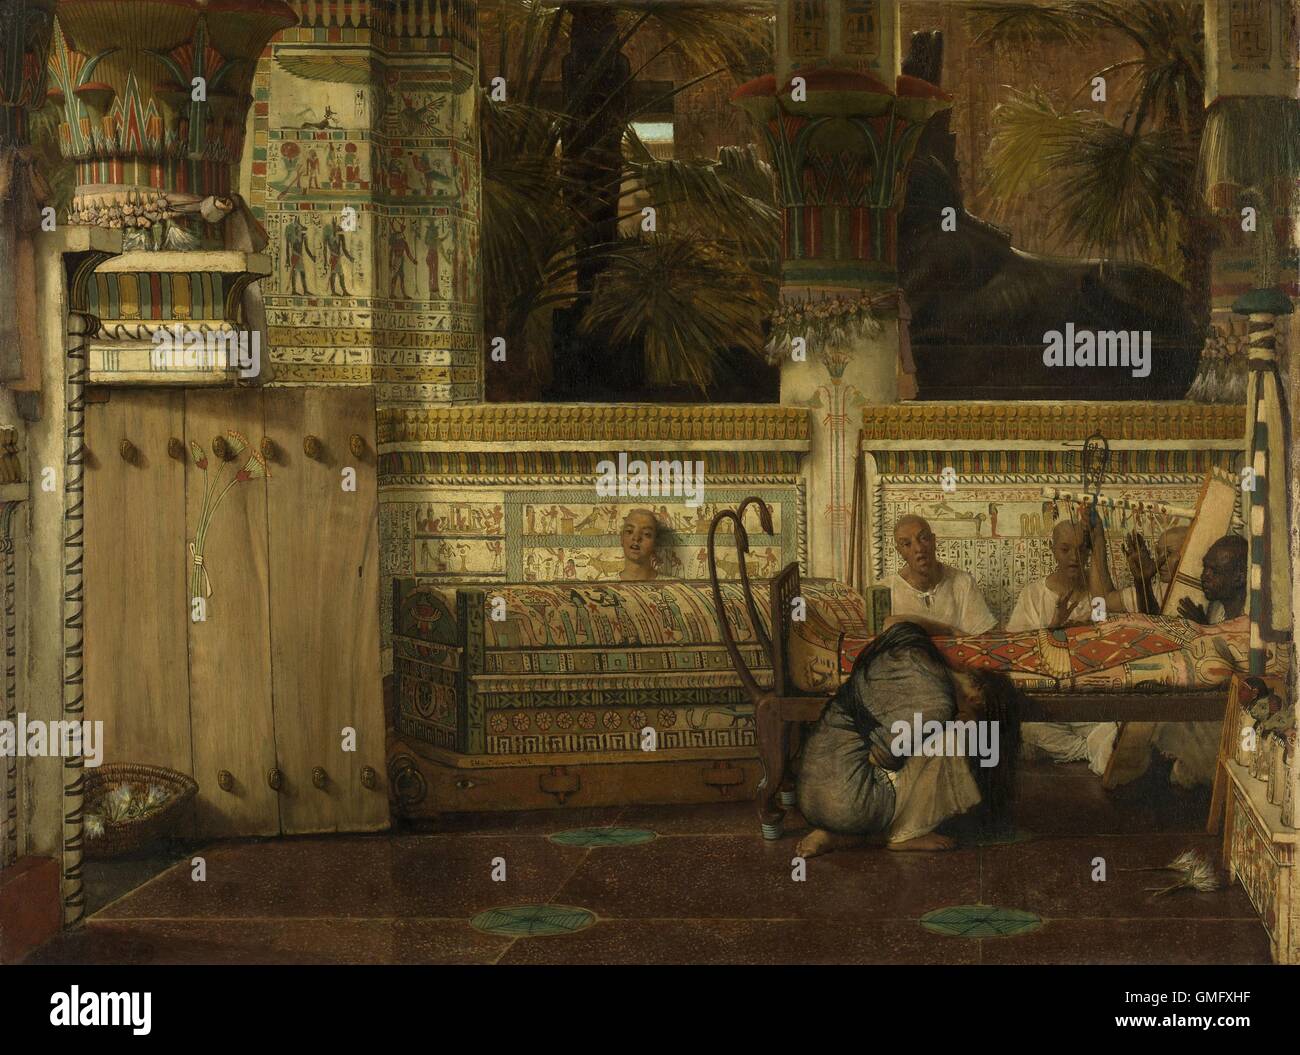 Ägyptische Witwe von Lawrence Alma Tadema, 1872, englische Gemälde Öl auf Leinwand. Frau trauert um den inneren Mumie Fall ihres Ehemannes. Priester und Sänger und architektonische Details bereichern die Szene (BSLOC 2016 2 241) Stockfoto